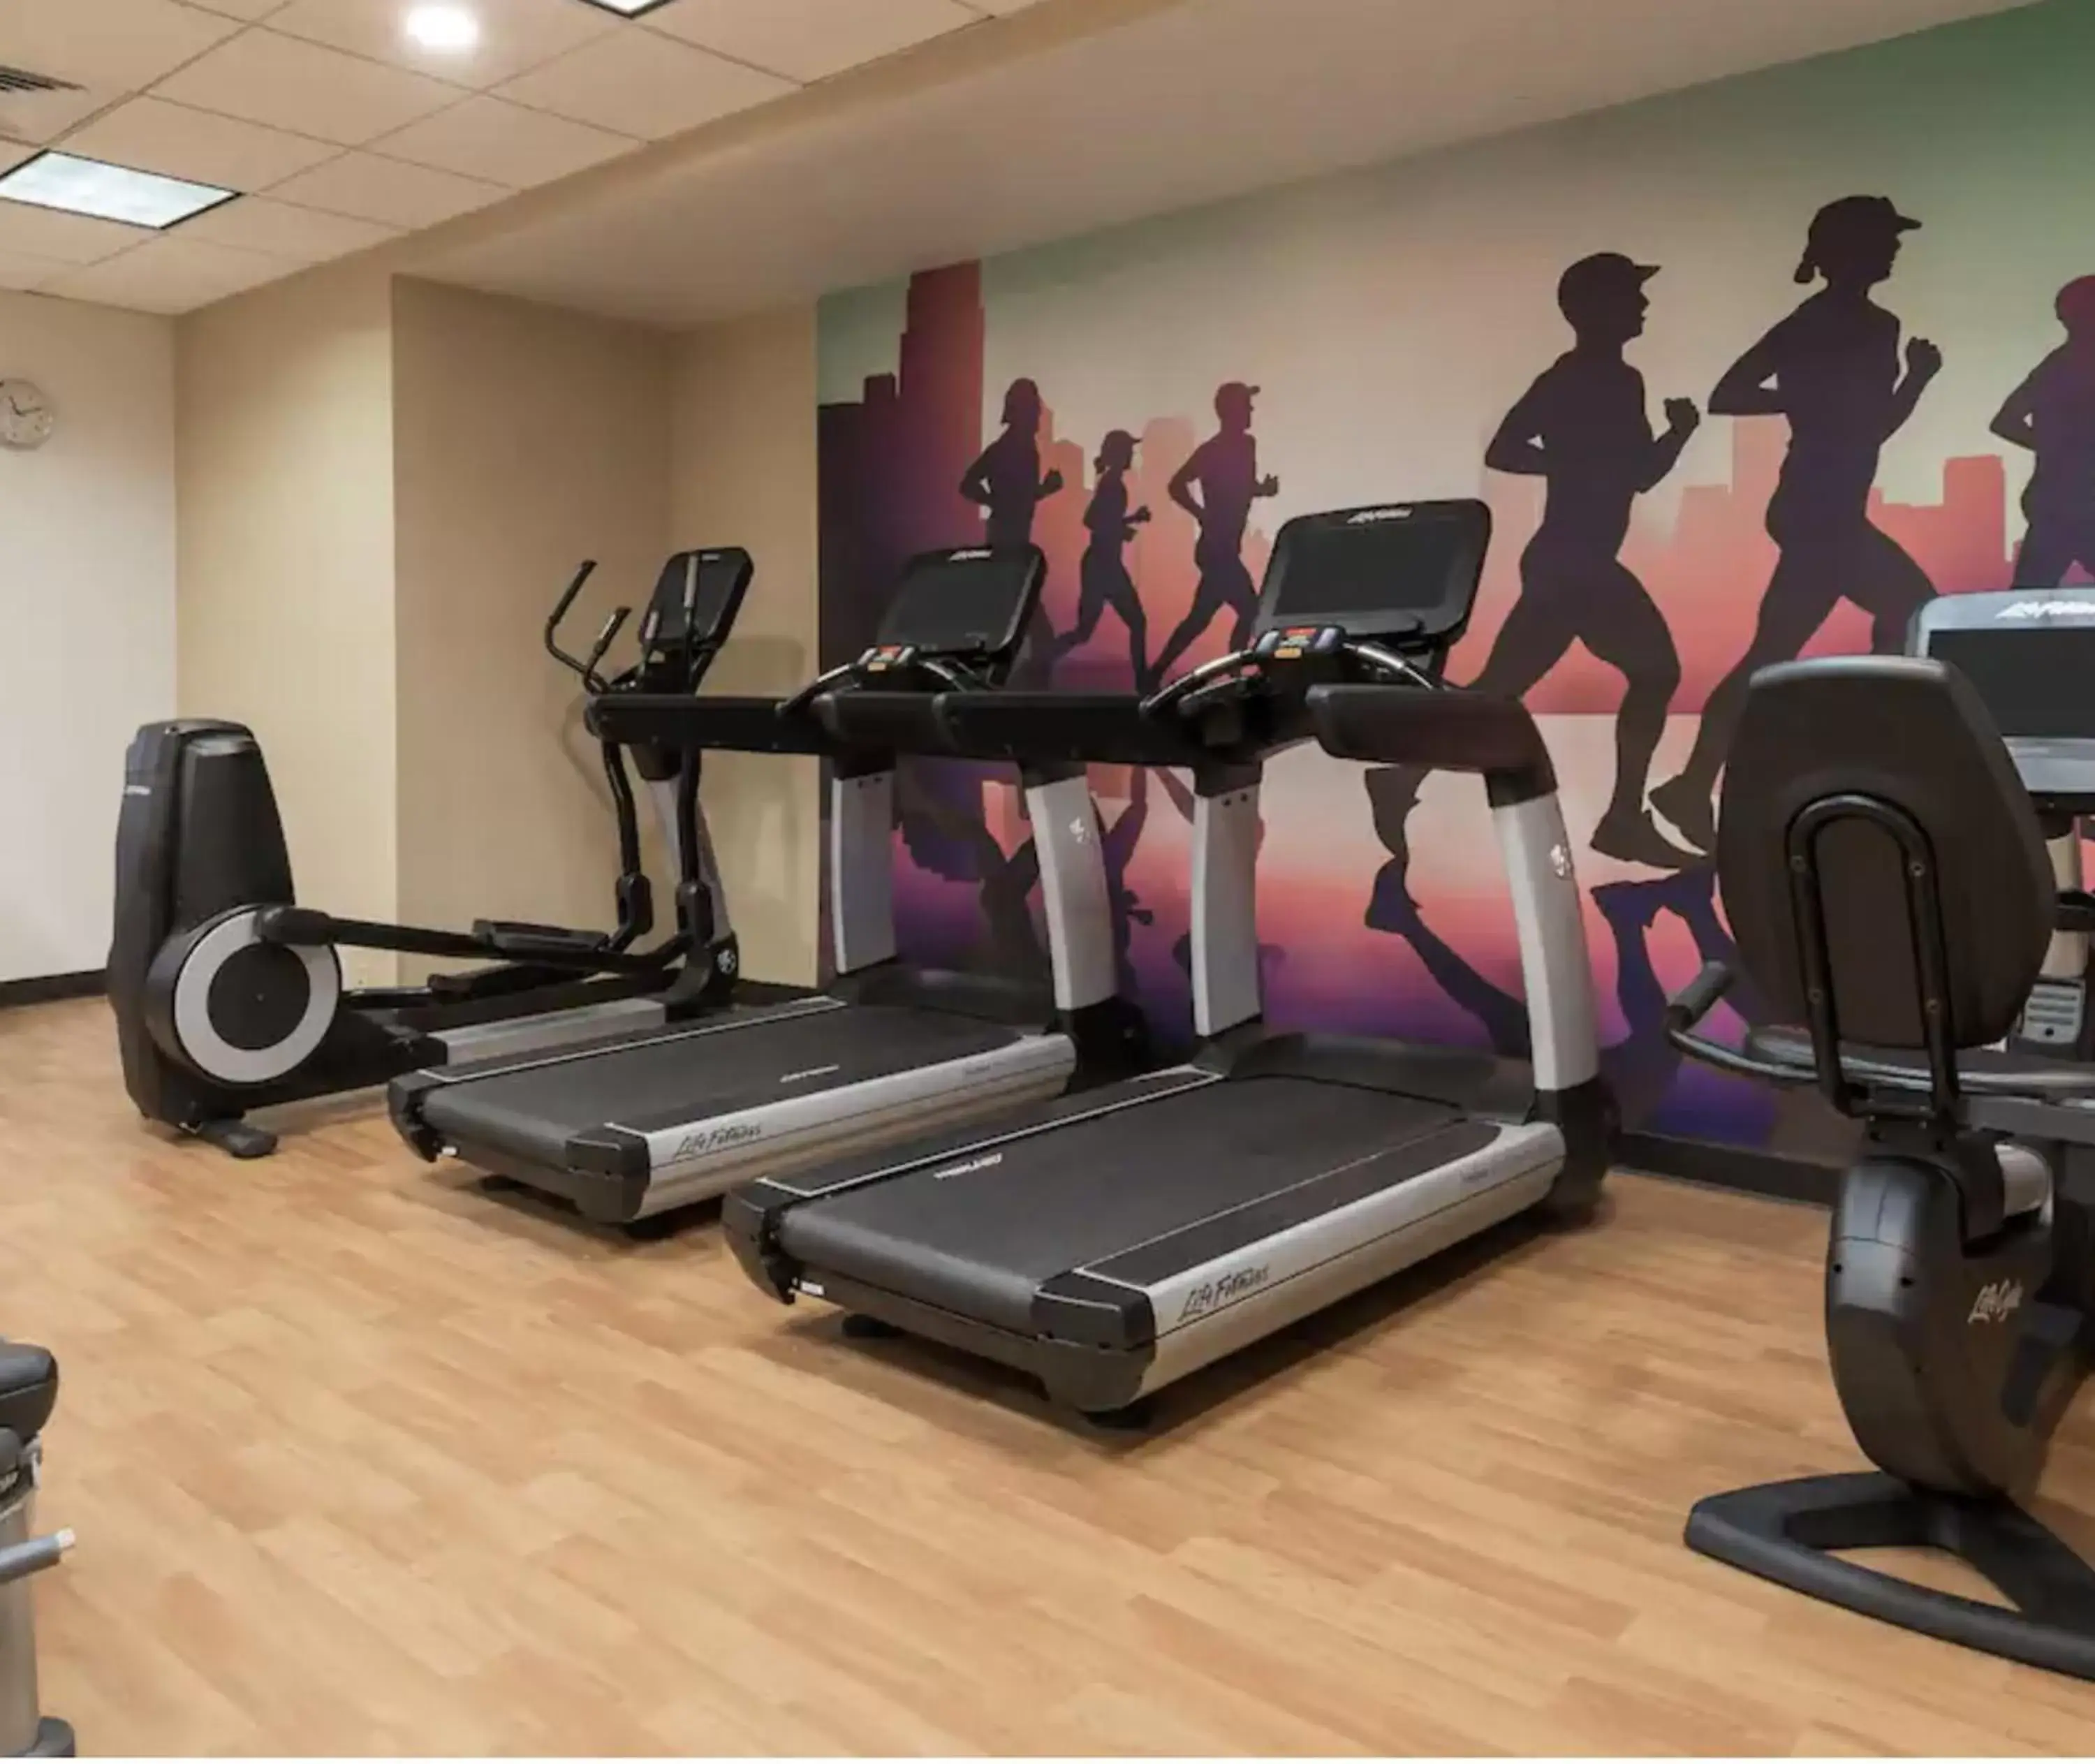 Fitness centre/facilities, Fitness Center/Facilities in Hyatt Place Boston/Medford